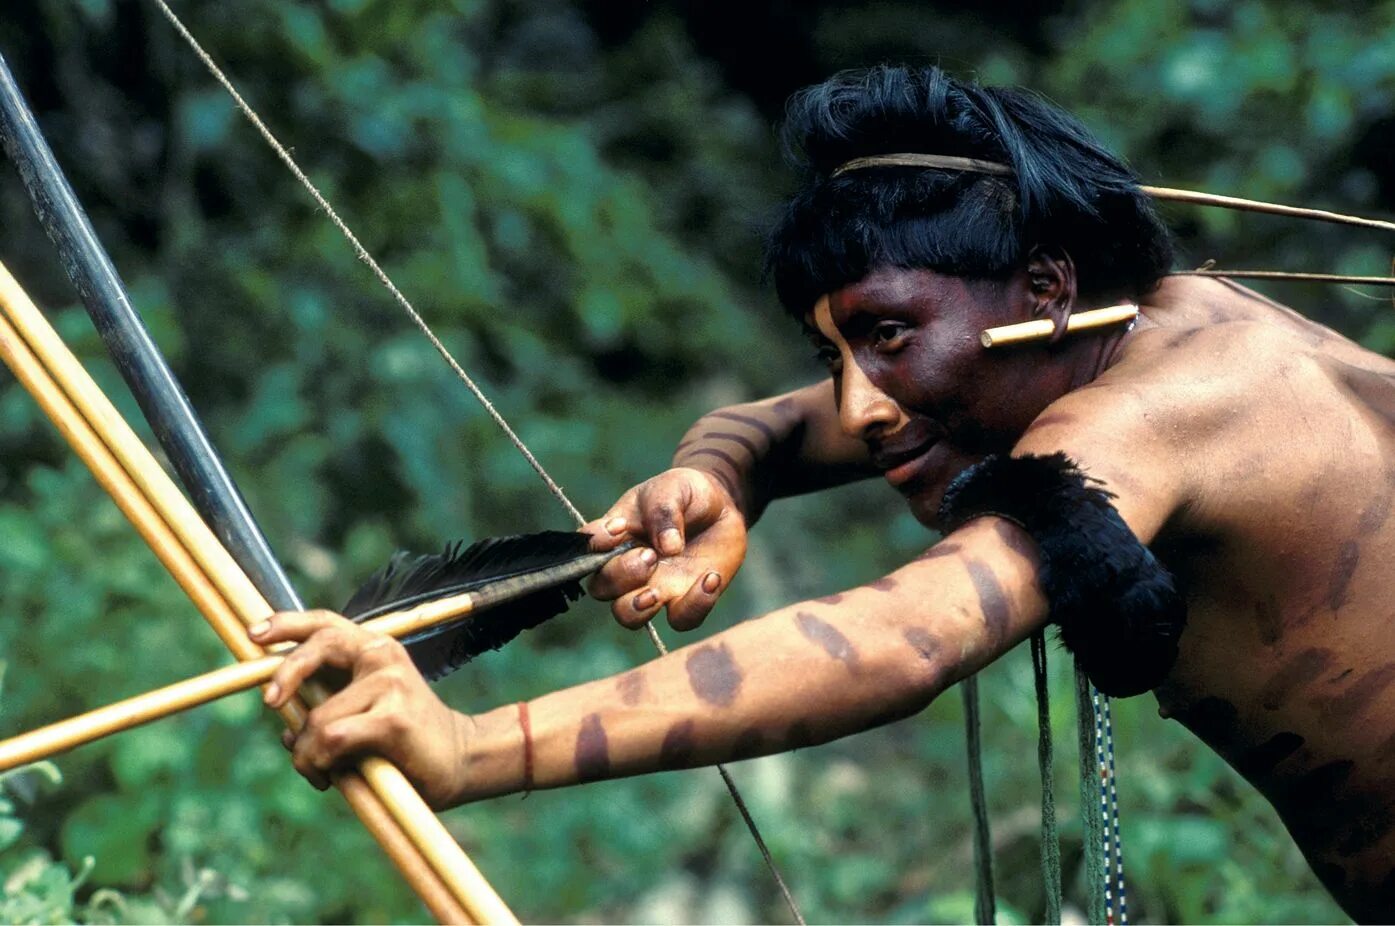 Амазонка индейцы яномамо. Яд из растения для стрел индейцев